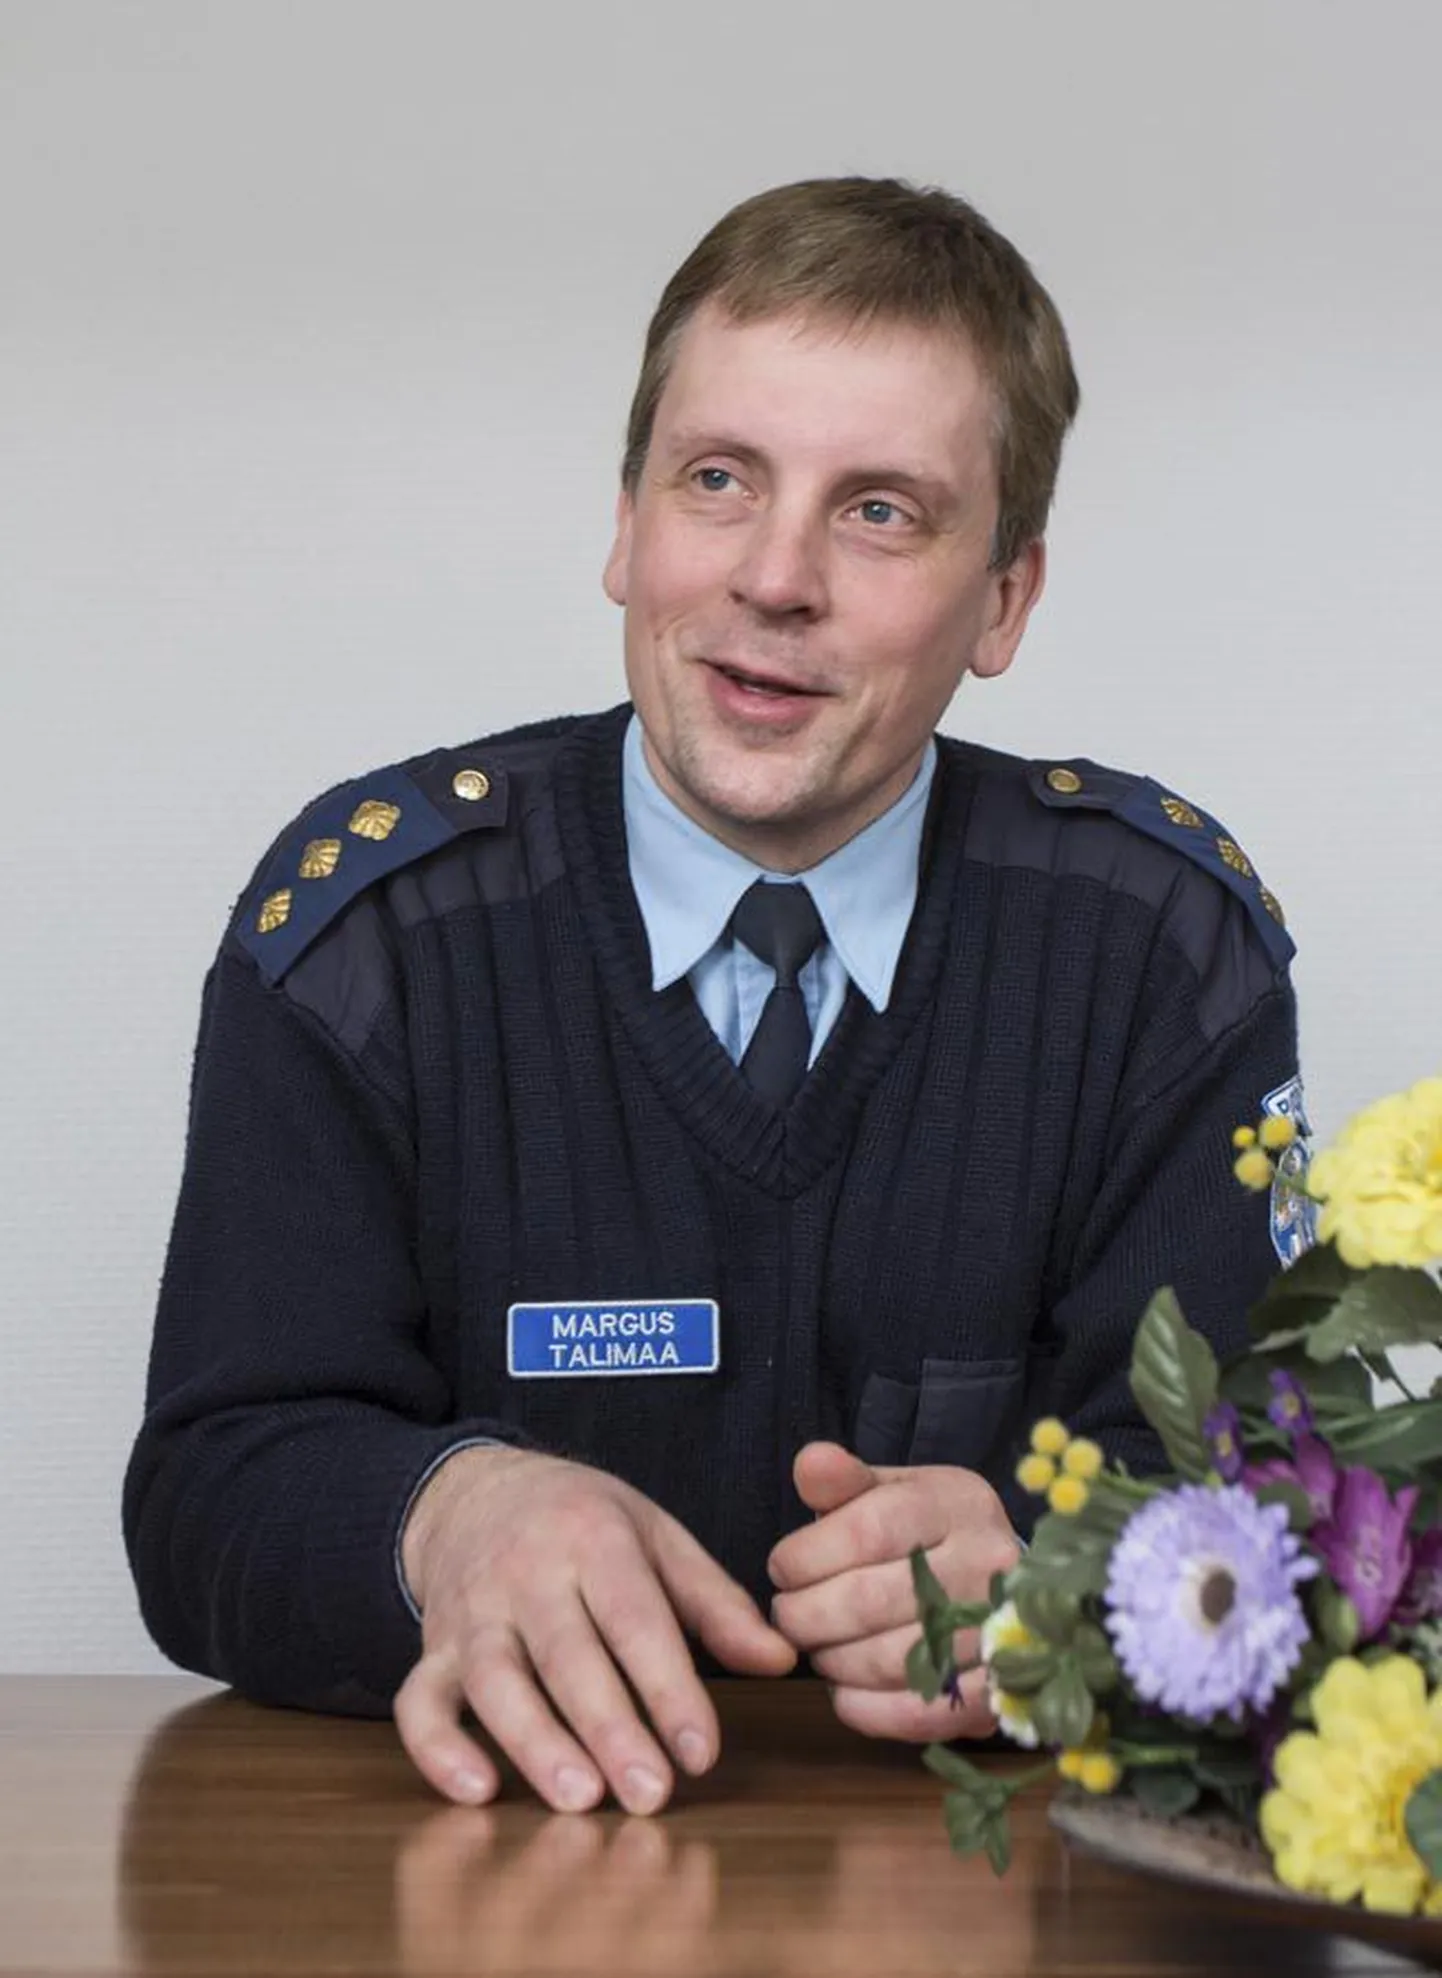 22 aastat Viljandi politseis töötanud Margus Talimaa sai heade töötulemuste eest prefektuuri parima korrakaitsja aunimetuse. Paljuski tänu tema tööle on Viljandimaast saanud Lõuna-Eesti kõige turvalisem piirkond.